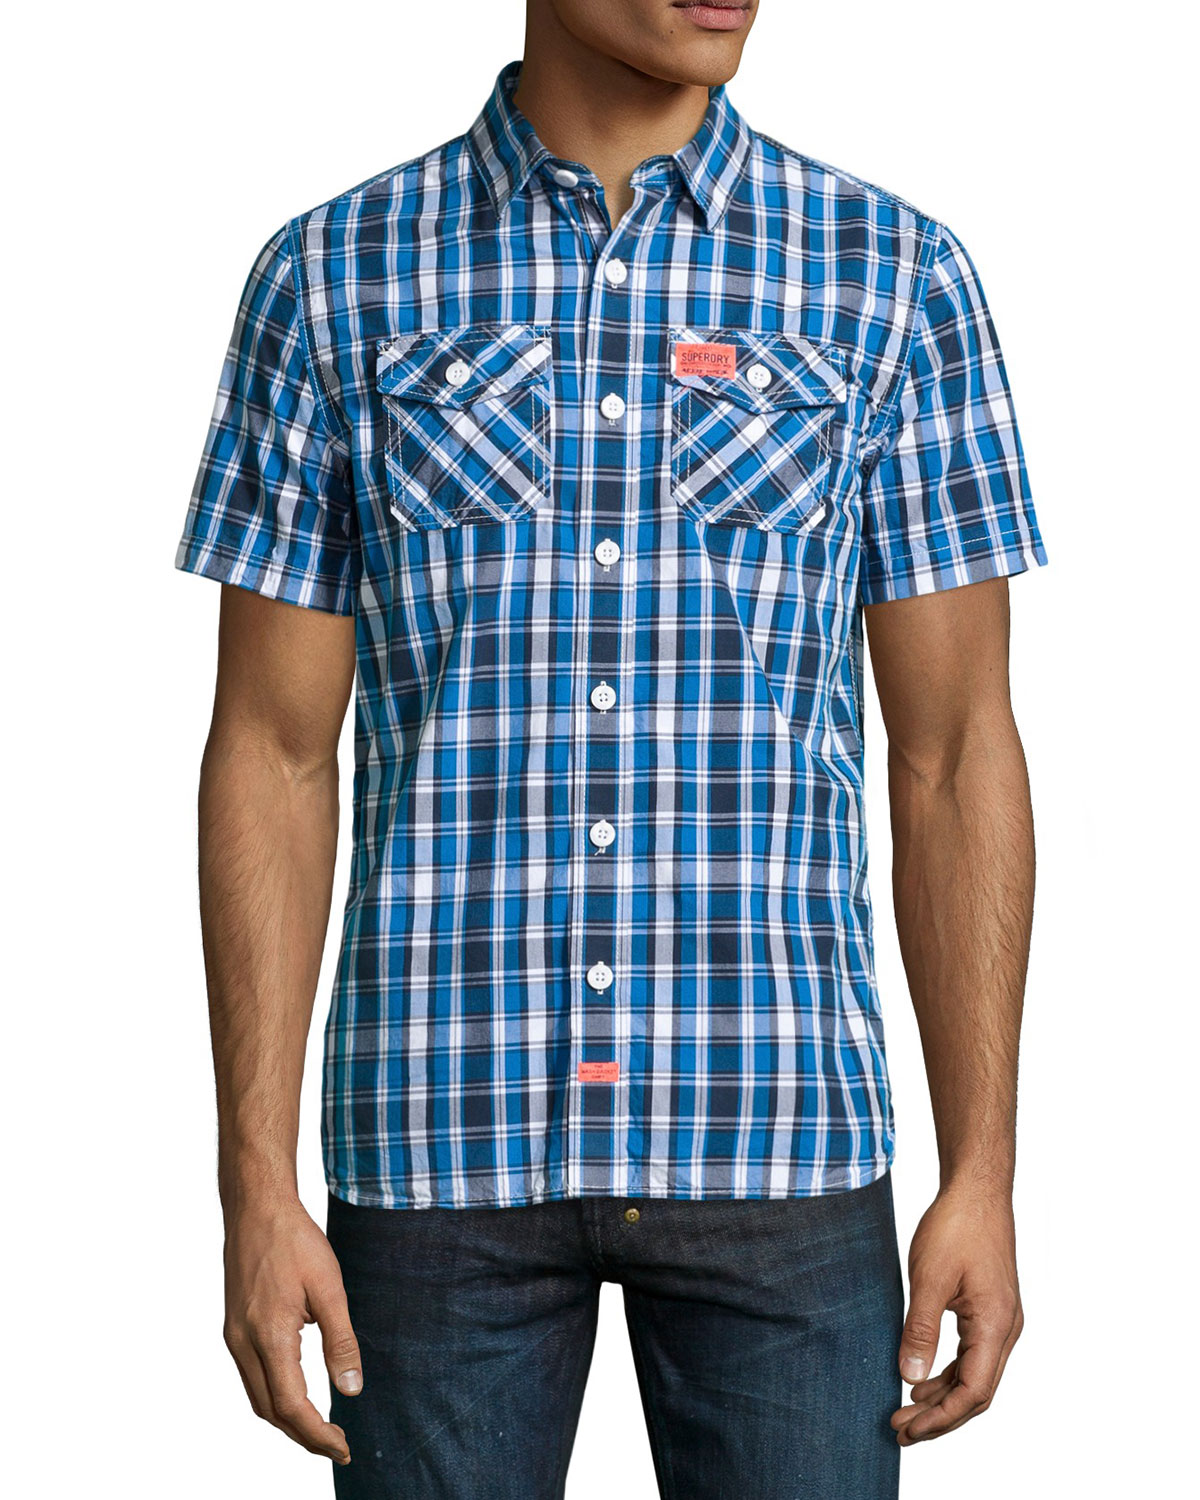 美國百分百【全新真品】Superdry 襯衫 短袖 上衣 格紋 雙口袋 深藍 藍色 極度乾燥 男 M L號 F338